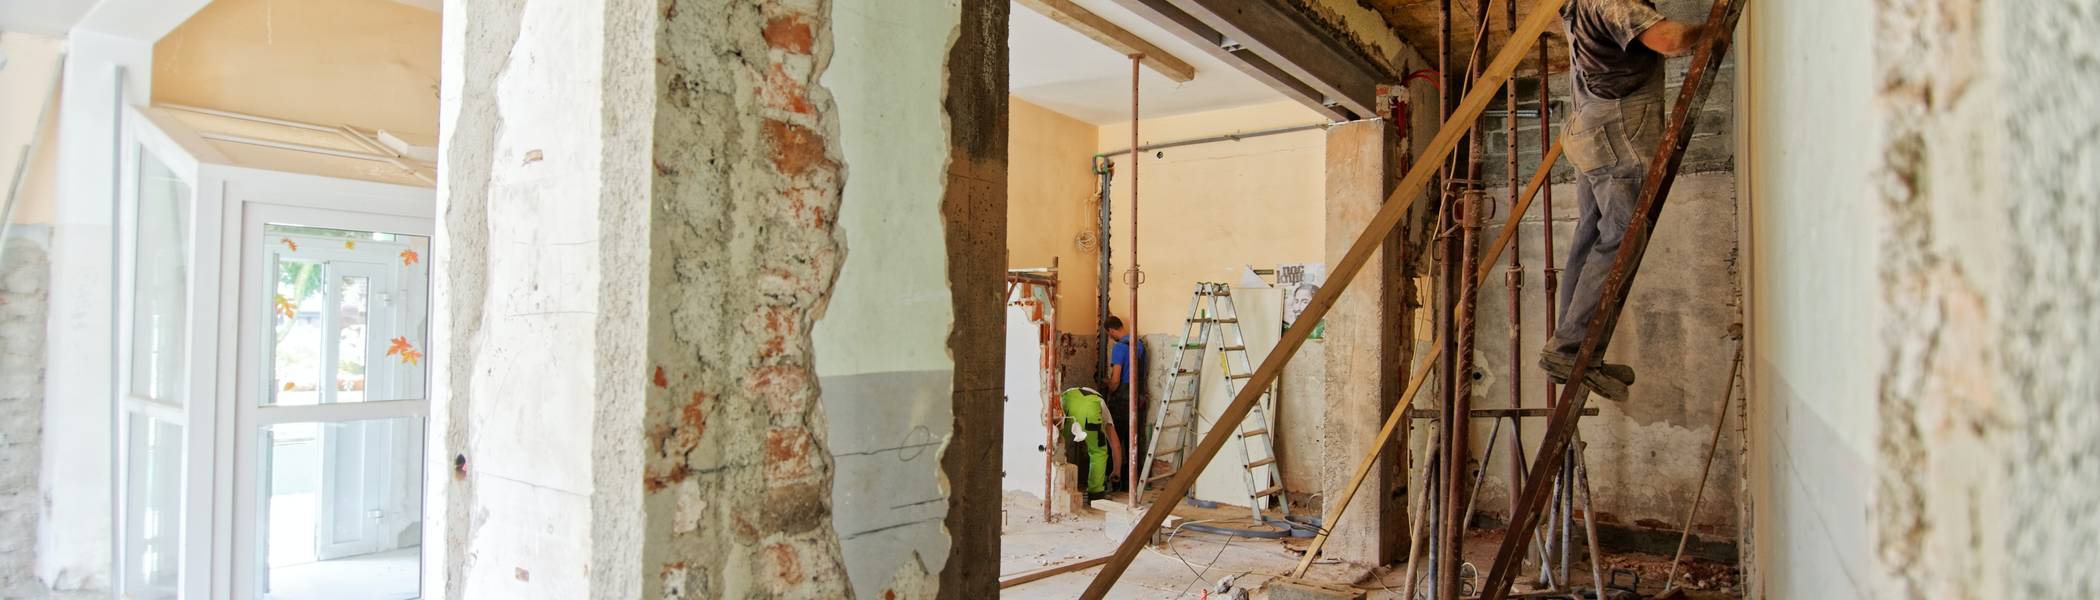 Een verkennend onderzoek naar de behoeften van bewoners tijdens een renovatie richting aardgasvrije